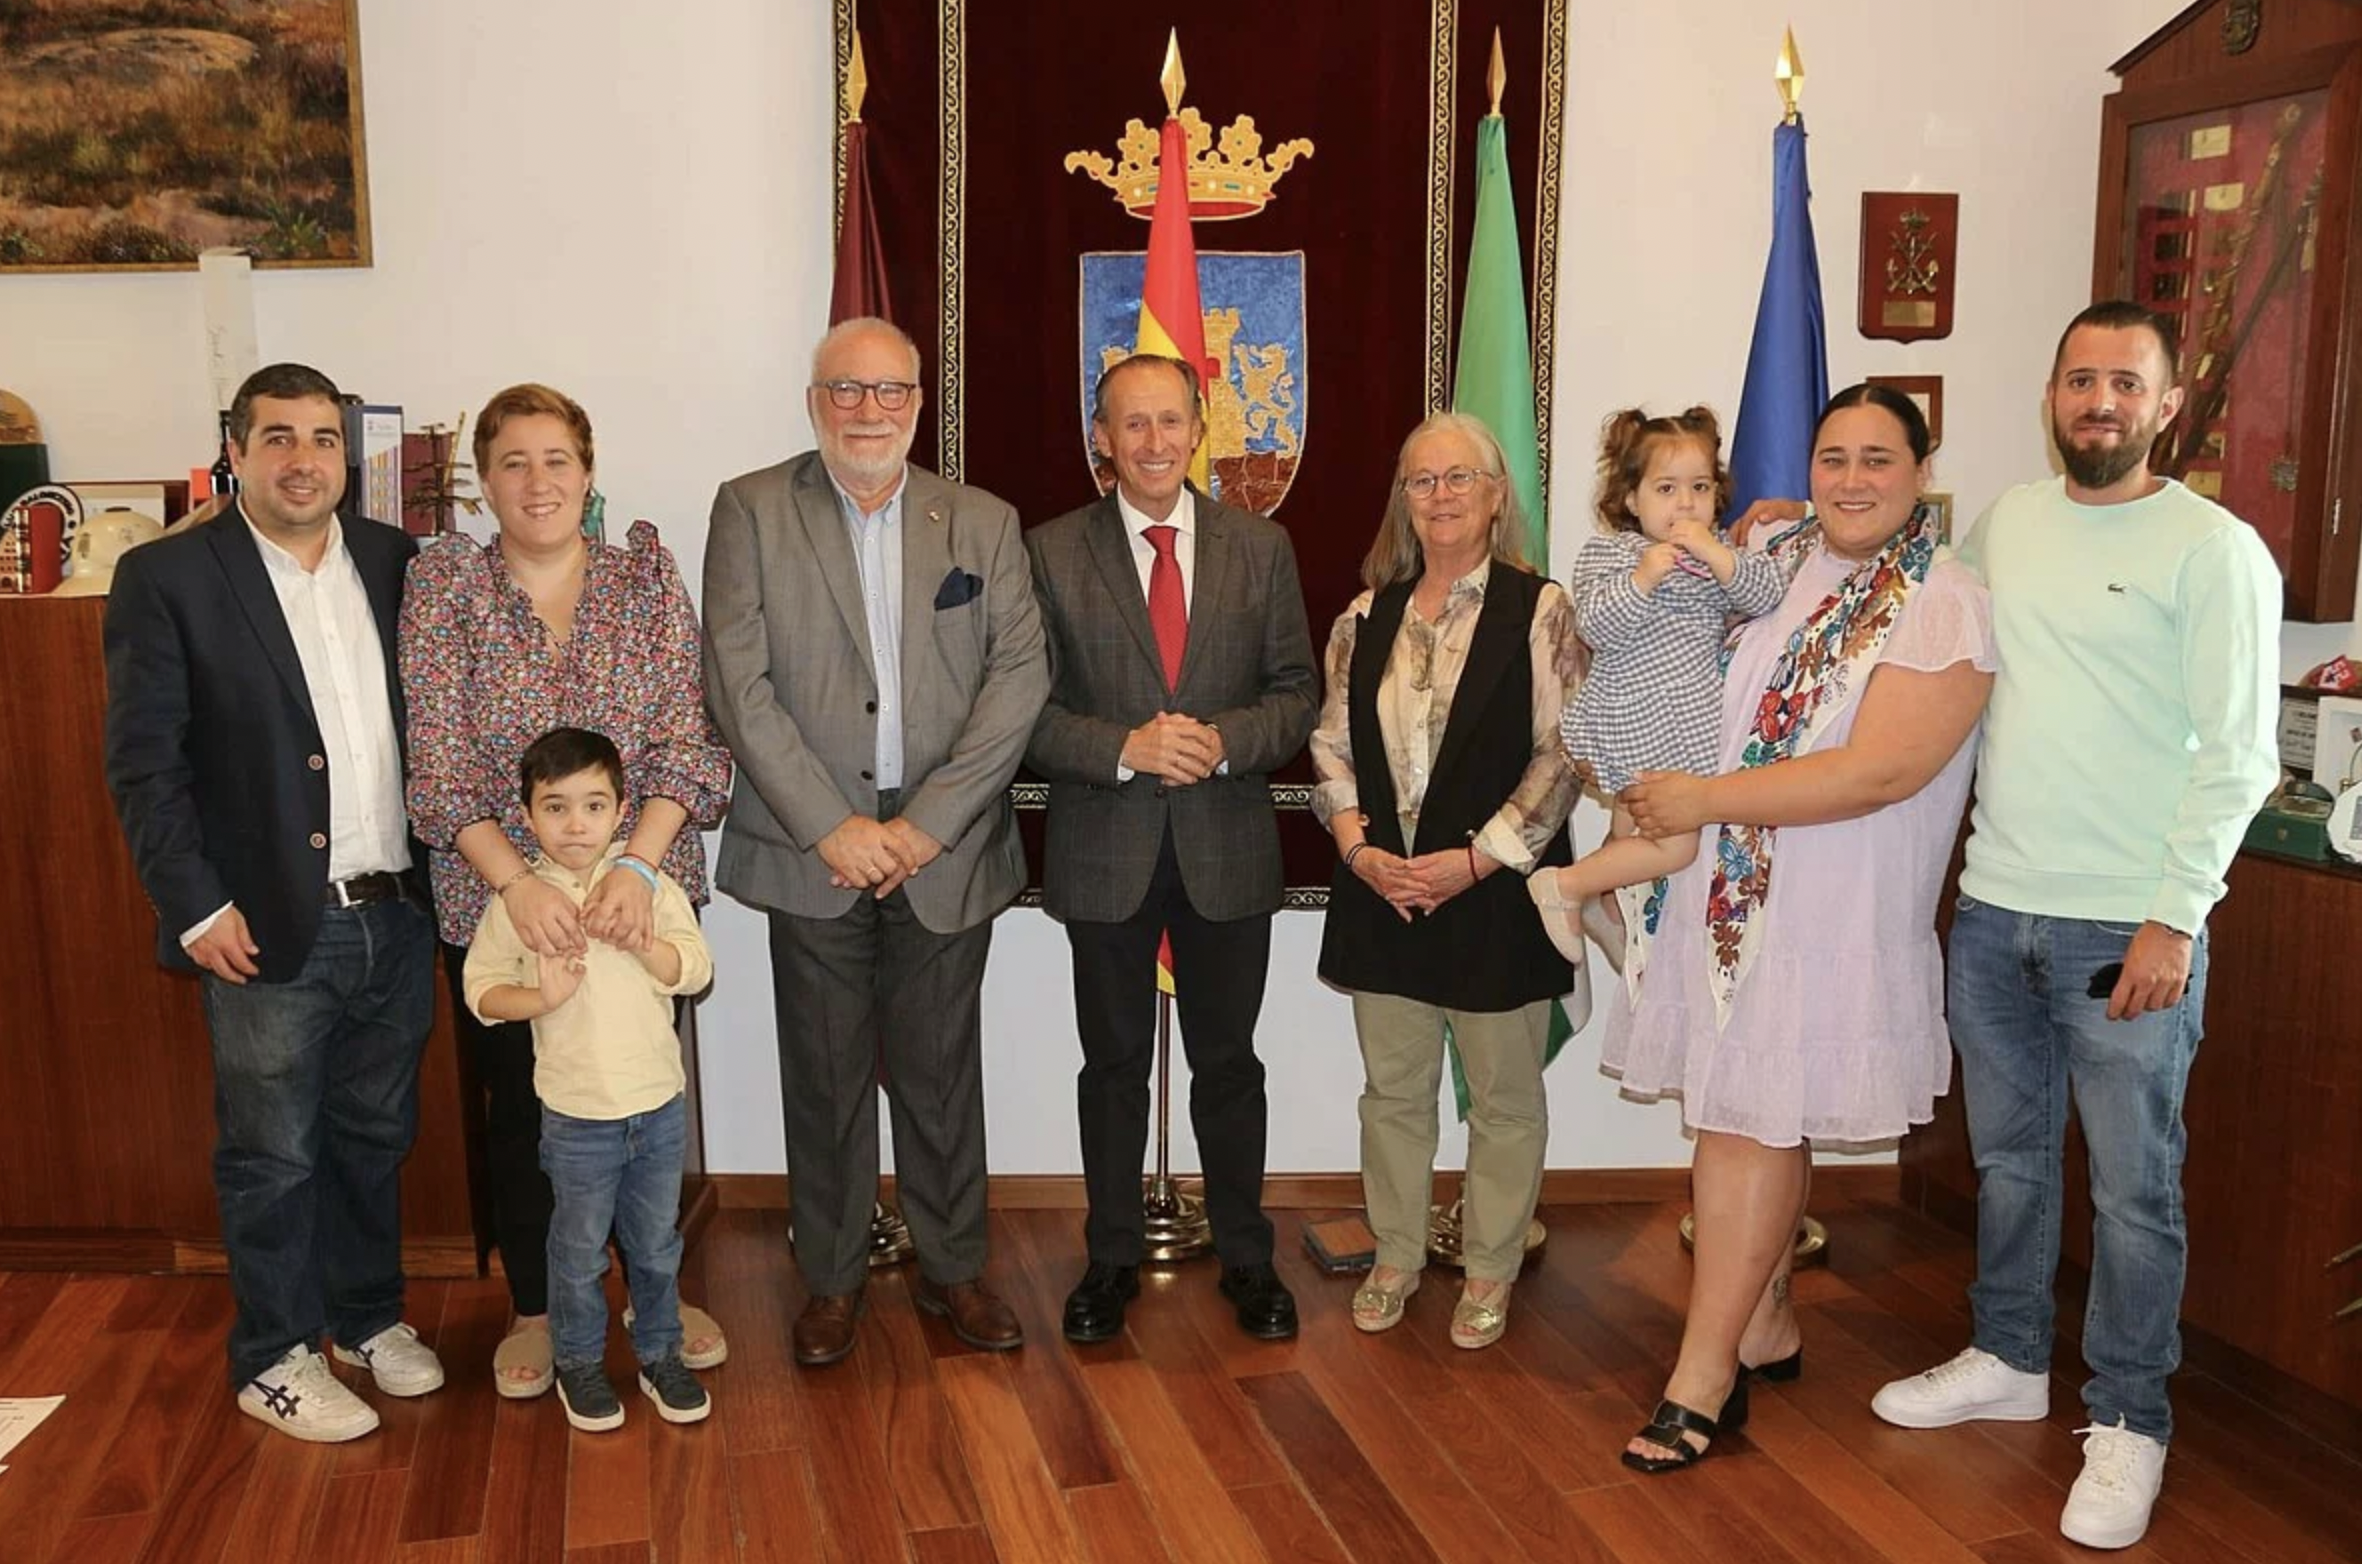 Emotivo homenaje a Francisco Javier López, trabajador municipal recién jubilado tras 40 años en el Ayuntamiento de Chiclana.